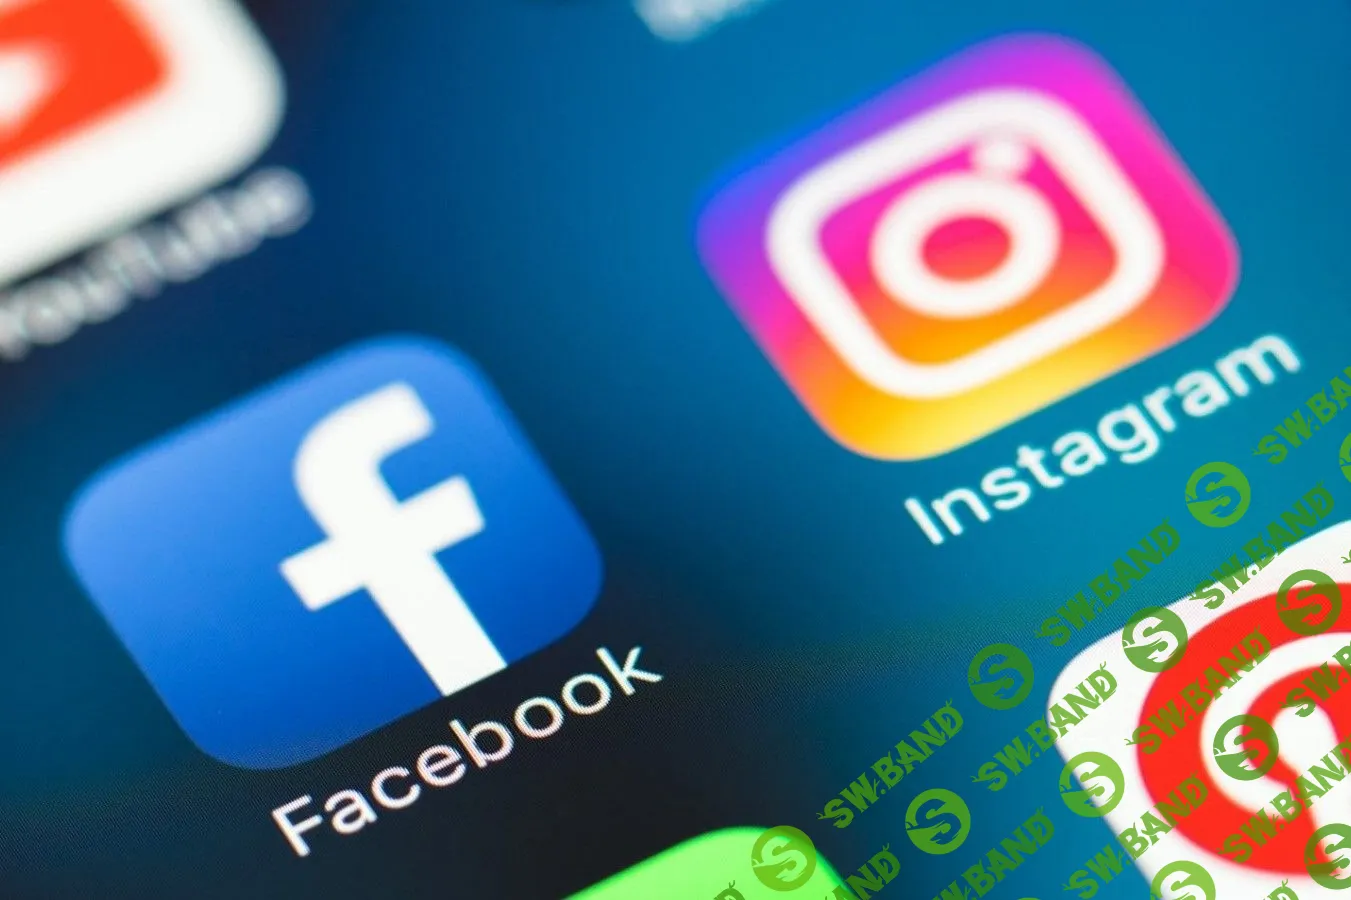 [Александр Бурков] Hardboost 2.0: самый полный курс по Facebook & Instagram маркетингу (2020)